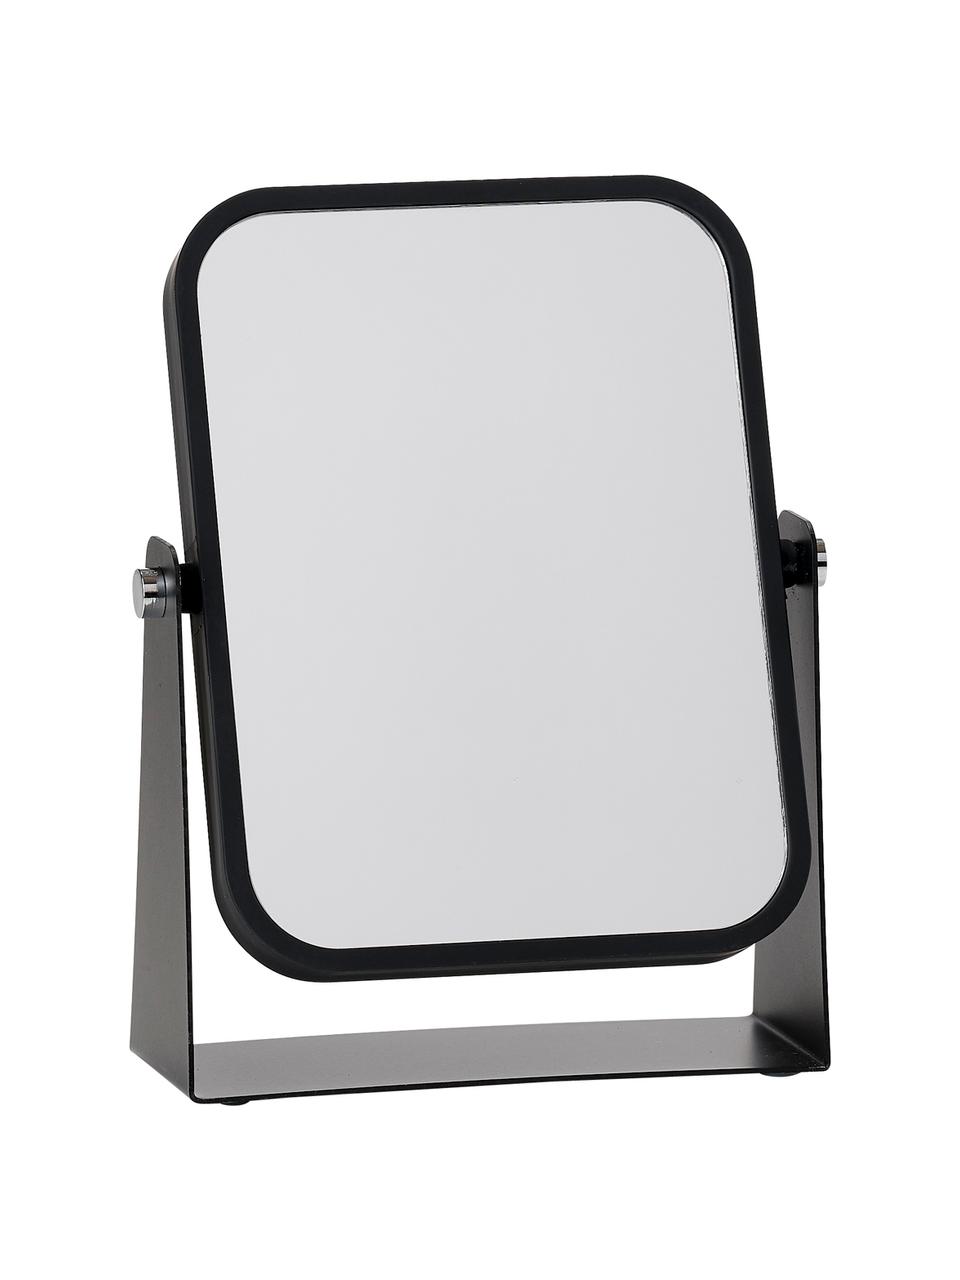 Eckiger Kosmetikspiegel Aurora mit Vergrößerung, Rahmen: Metall, beschichtet, Spiegelfläche: Spiegelglas, Schwarz, B 15 x H 21 cm